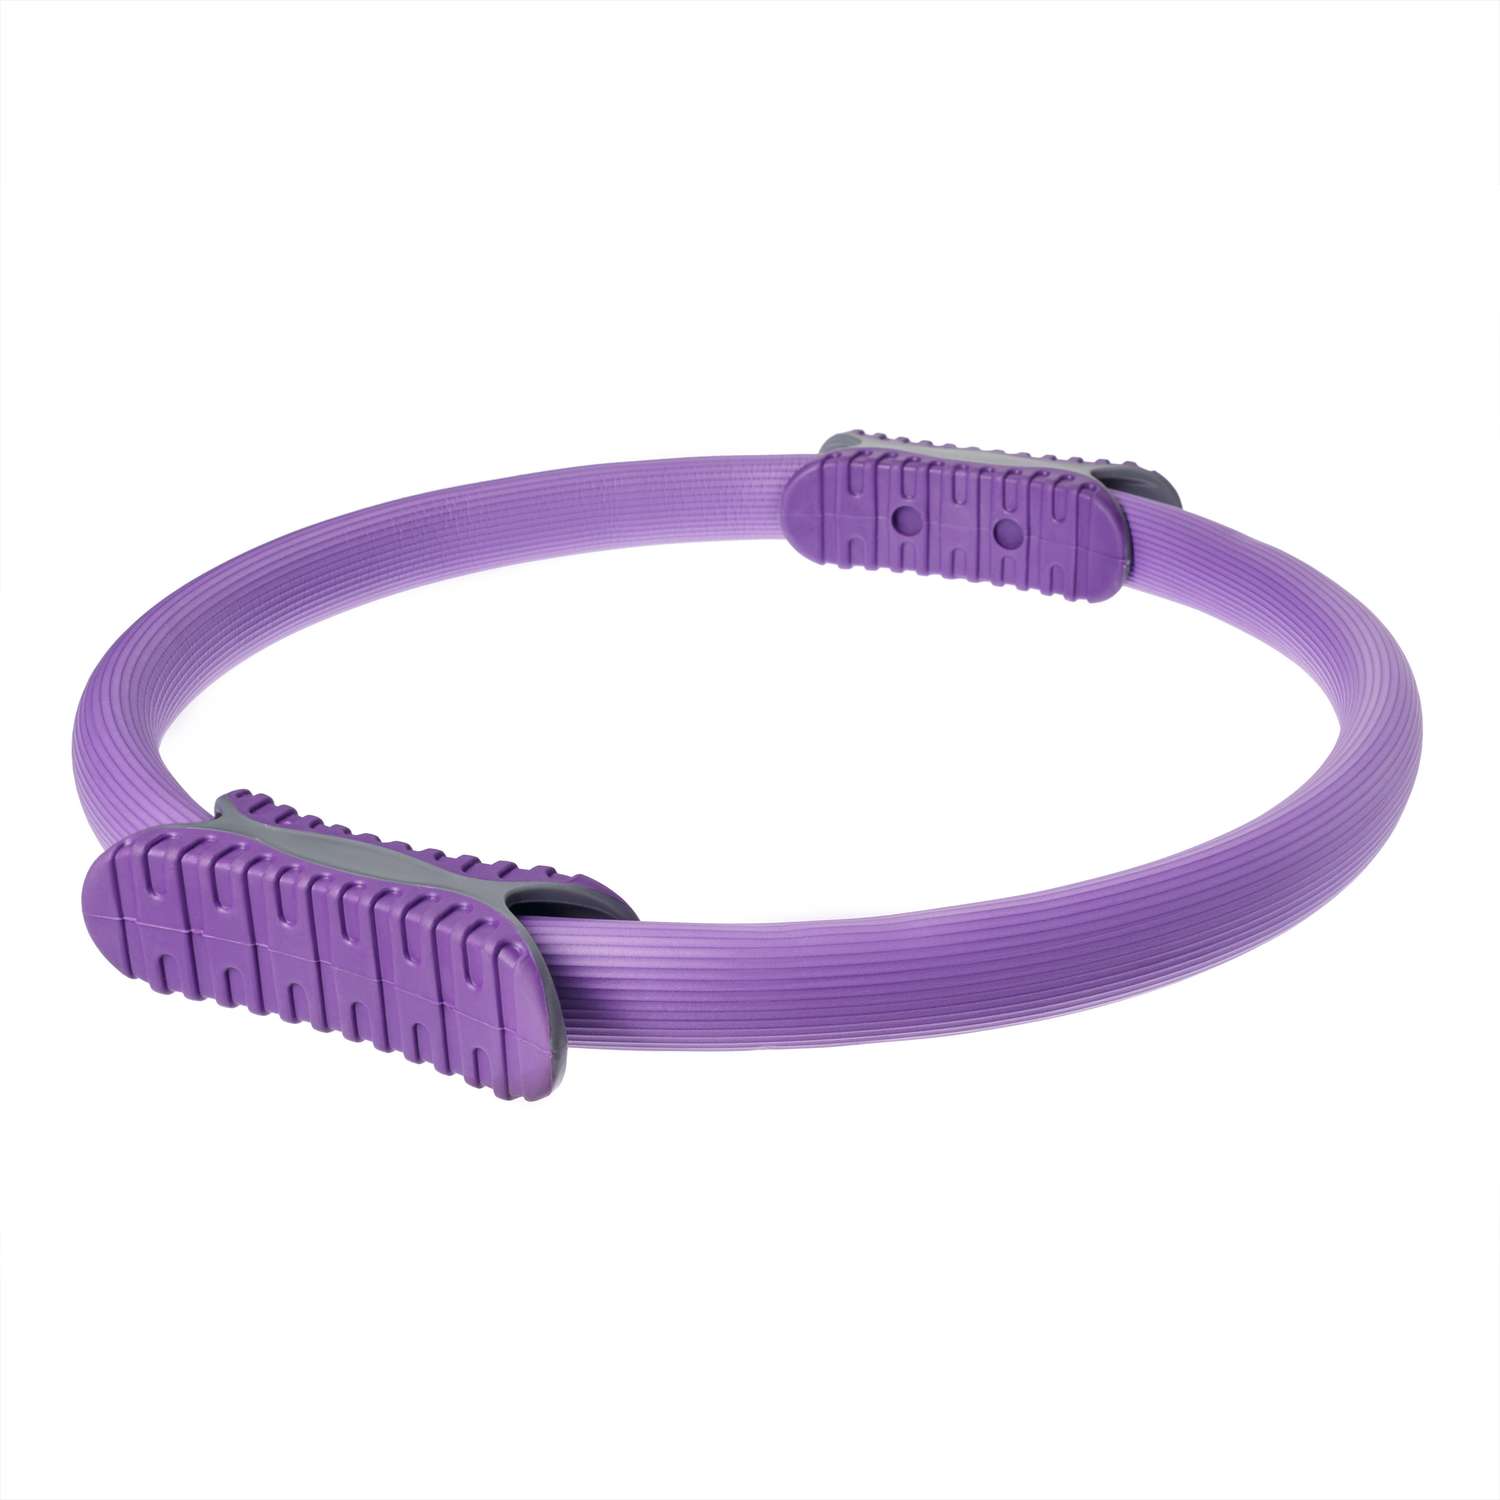 Изотоническое кольцо STRONG BODY обруч для йоги и пилатес d 38 см фиолетовое - фото 2